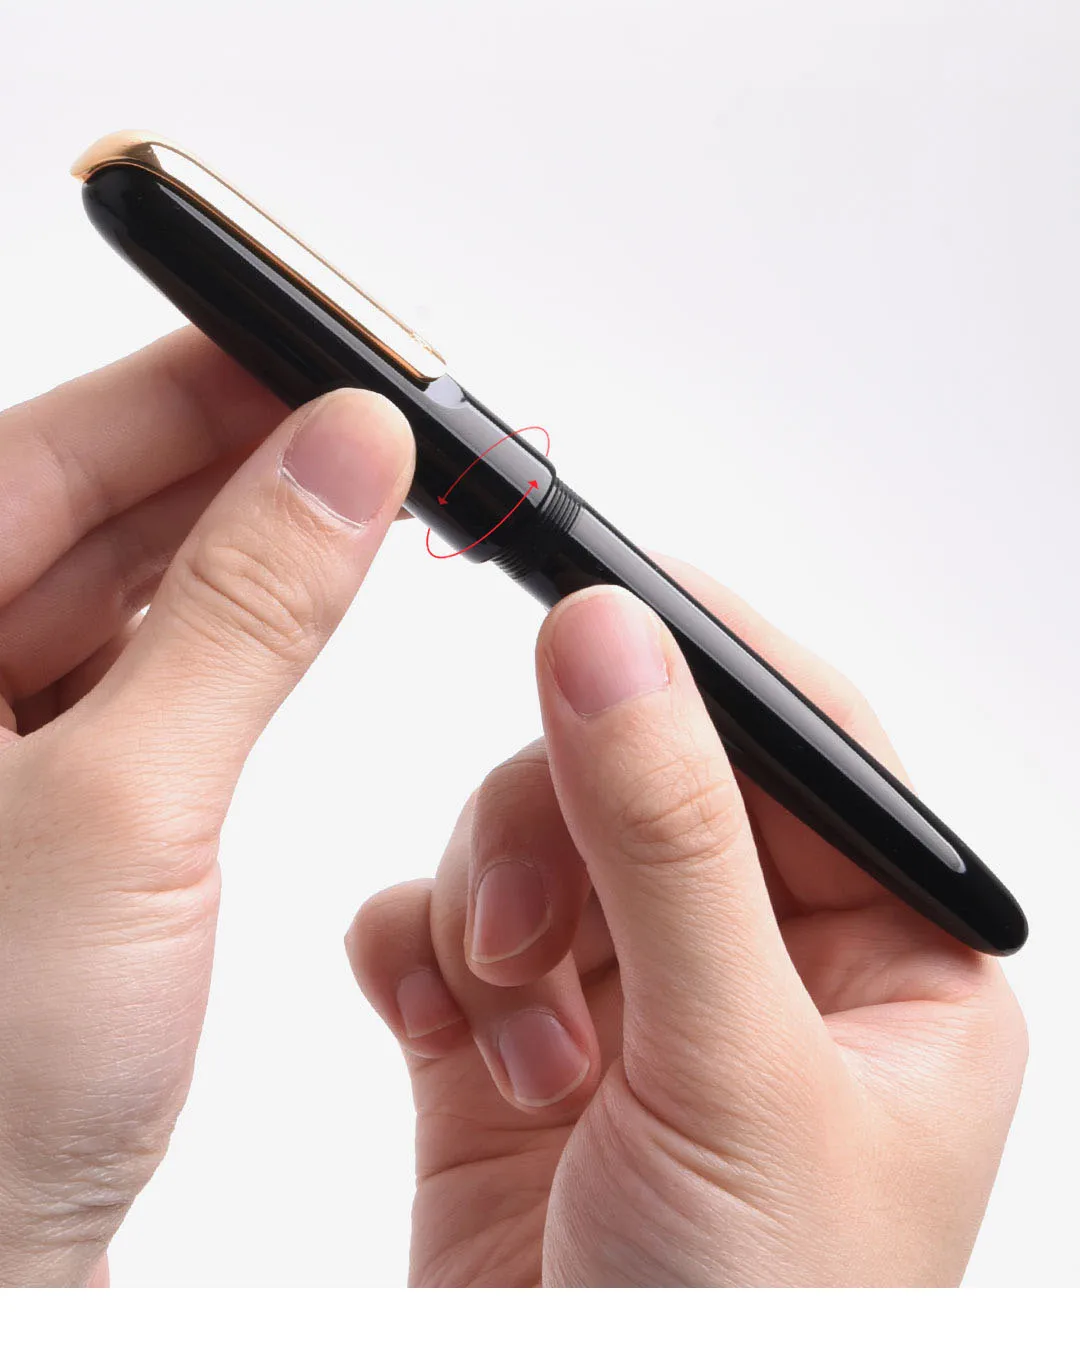 Xiaomi Mijia kaco ручка с золотым наконечником 14K F Перо 0,5 мм офисная ручка для деловых подписей для каллиграфии подарочная коробка